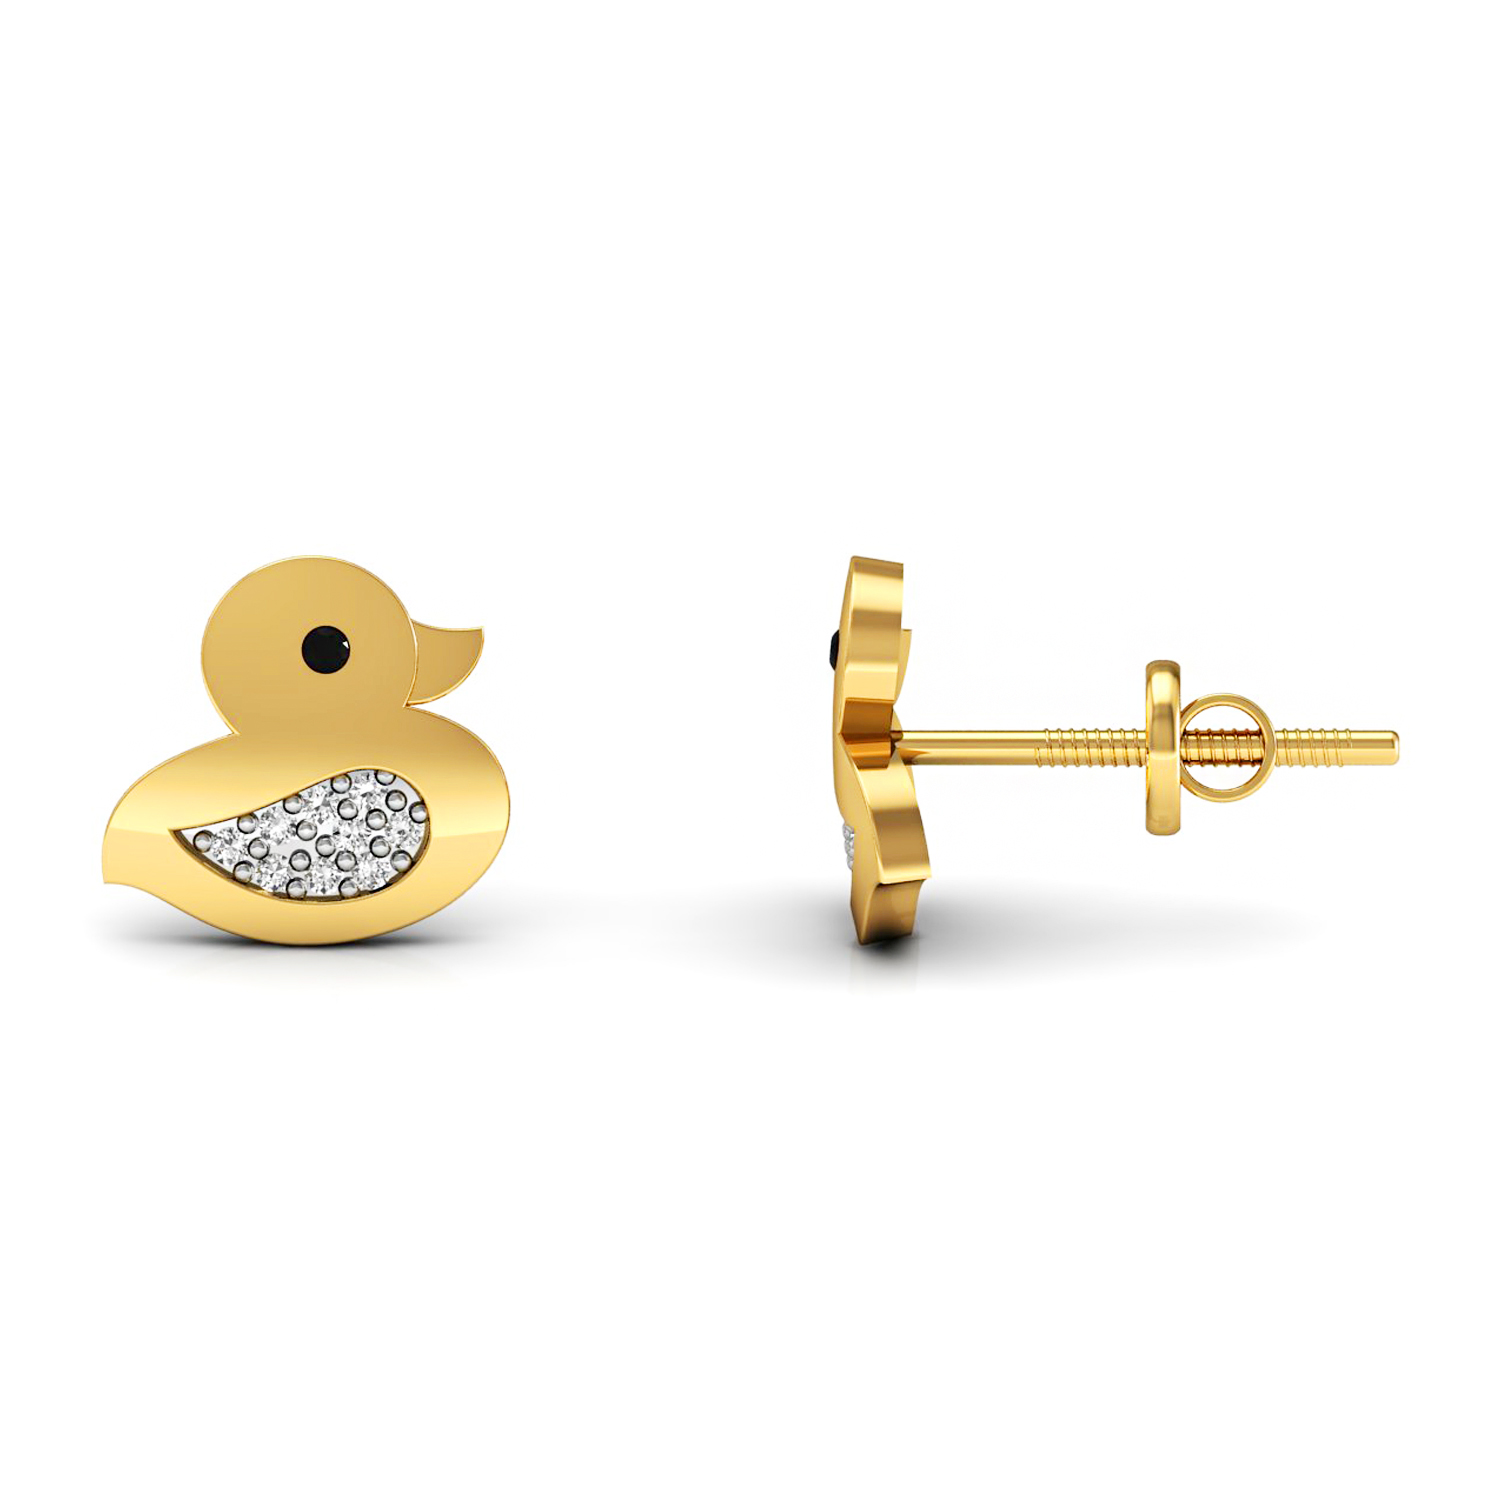 Duck shape kids stud earrings set in solid gold real diamond